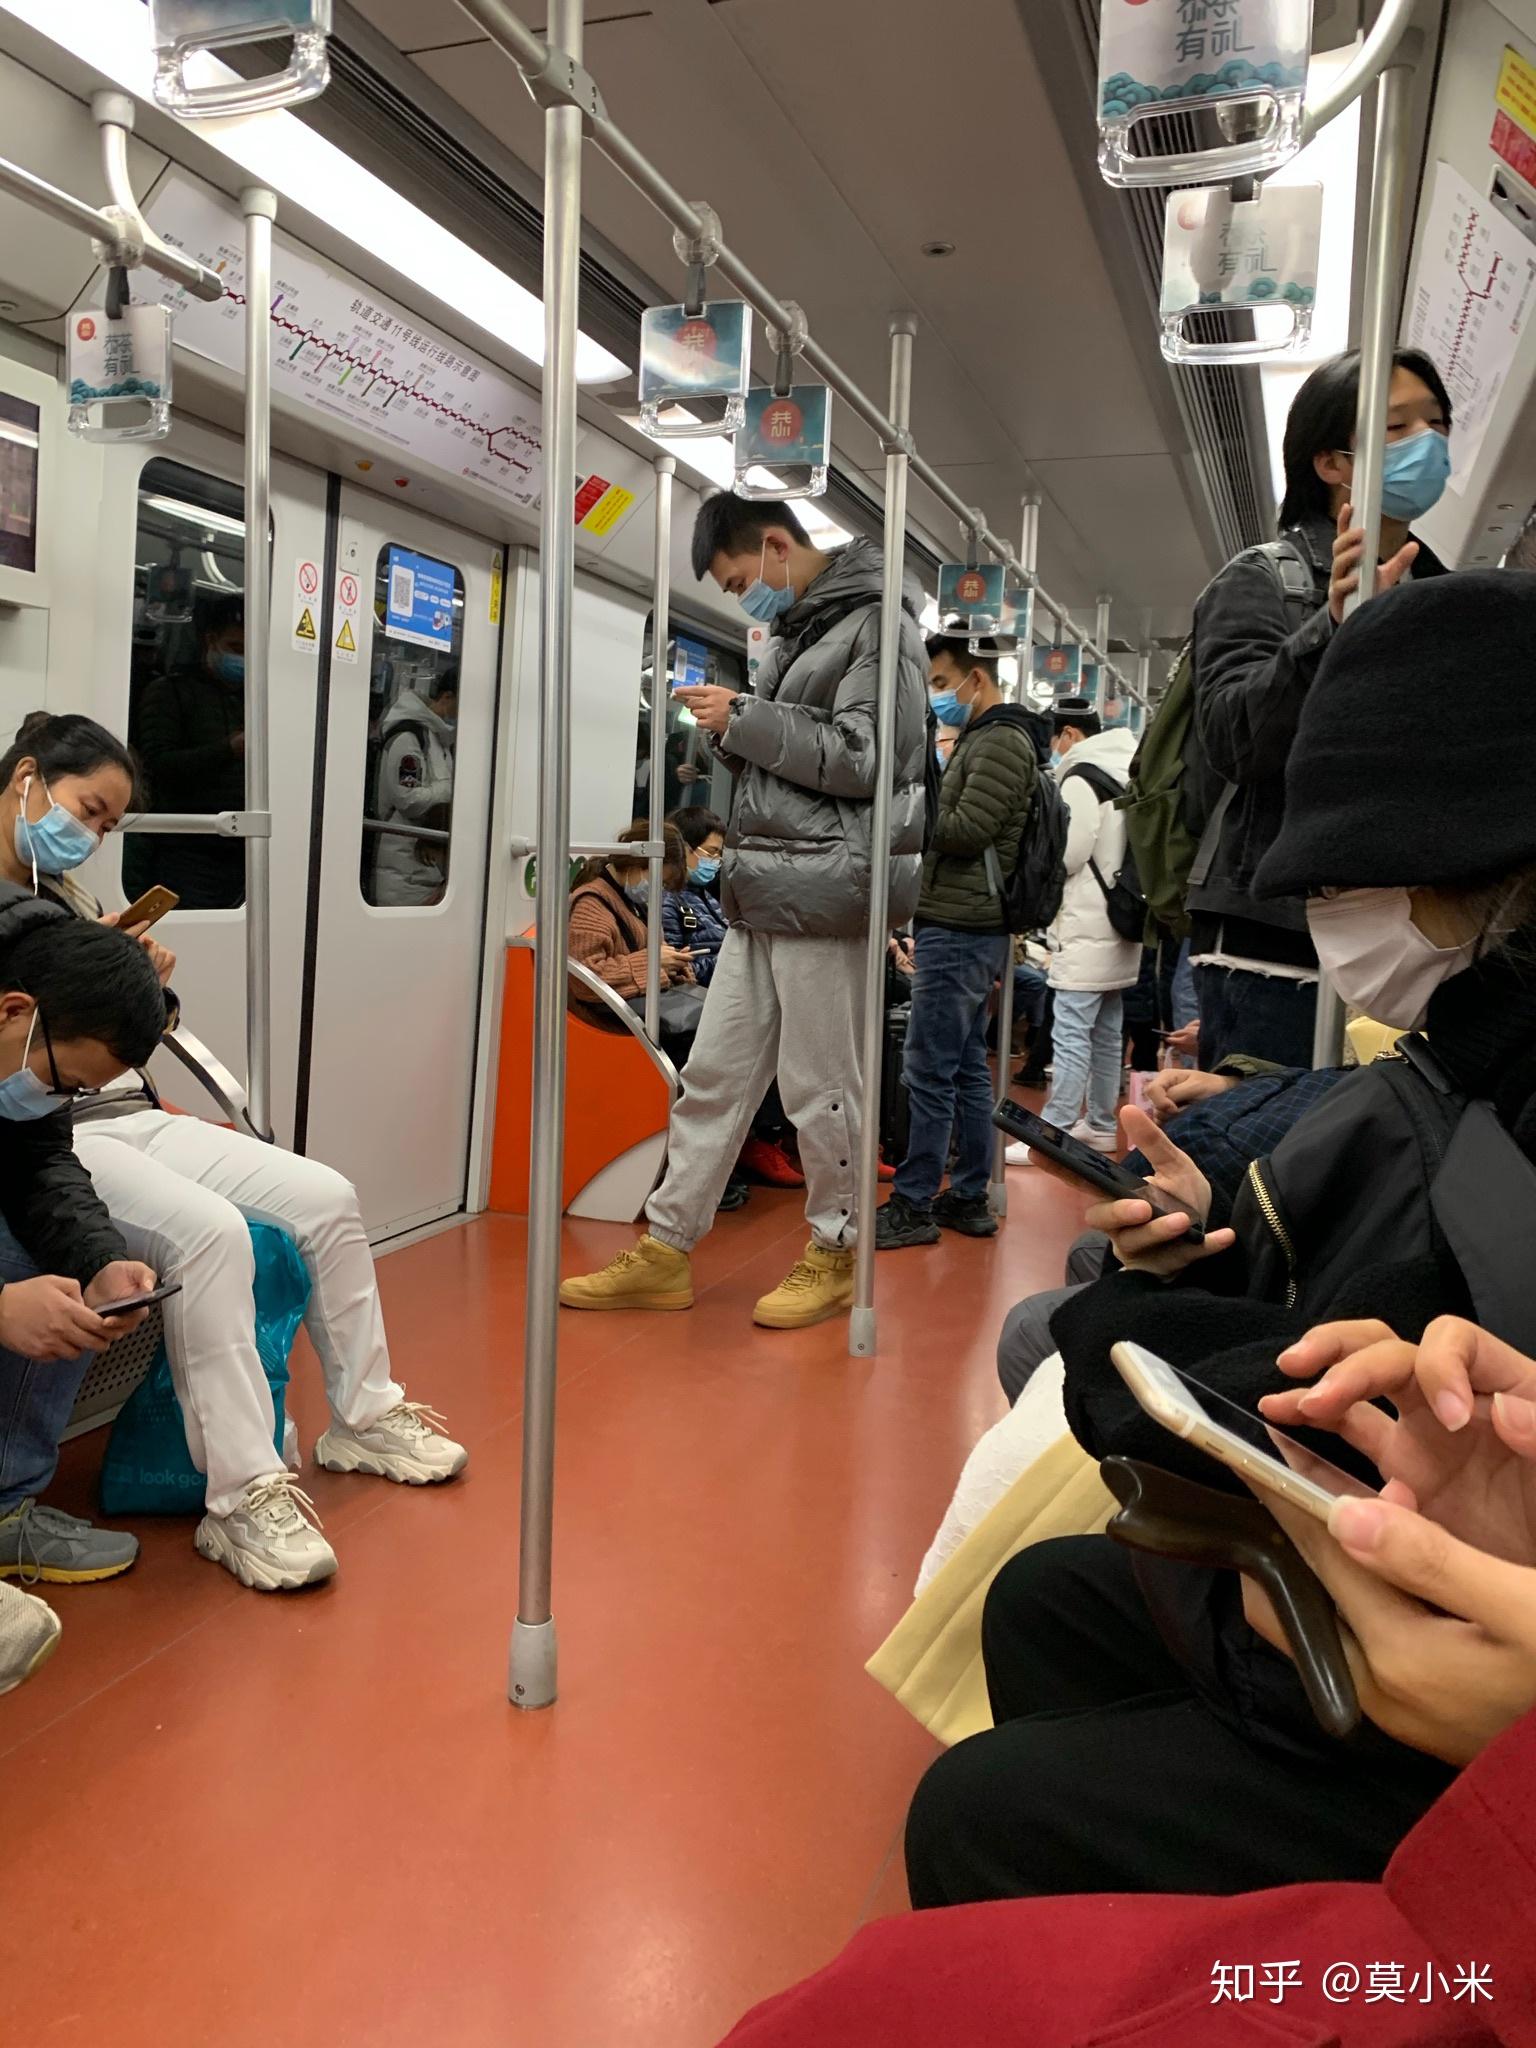 上海21点以后的地铁也是人满为患一群努力为生活奔波的人儿加油